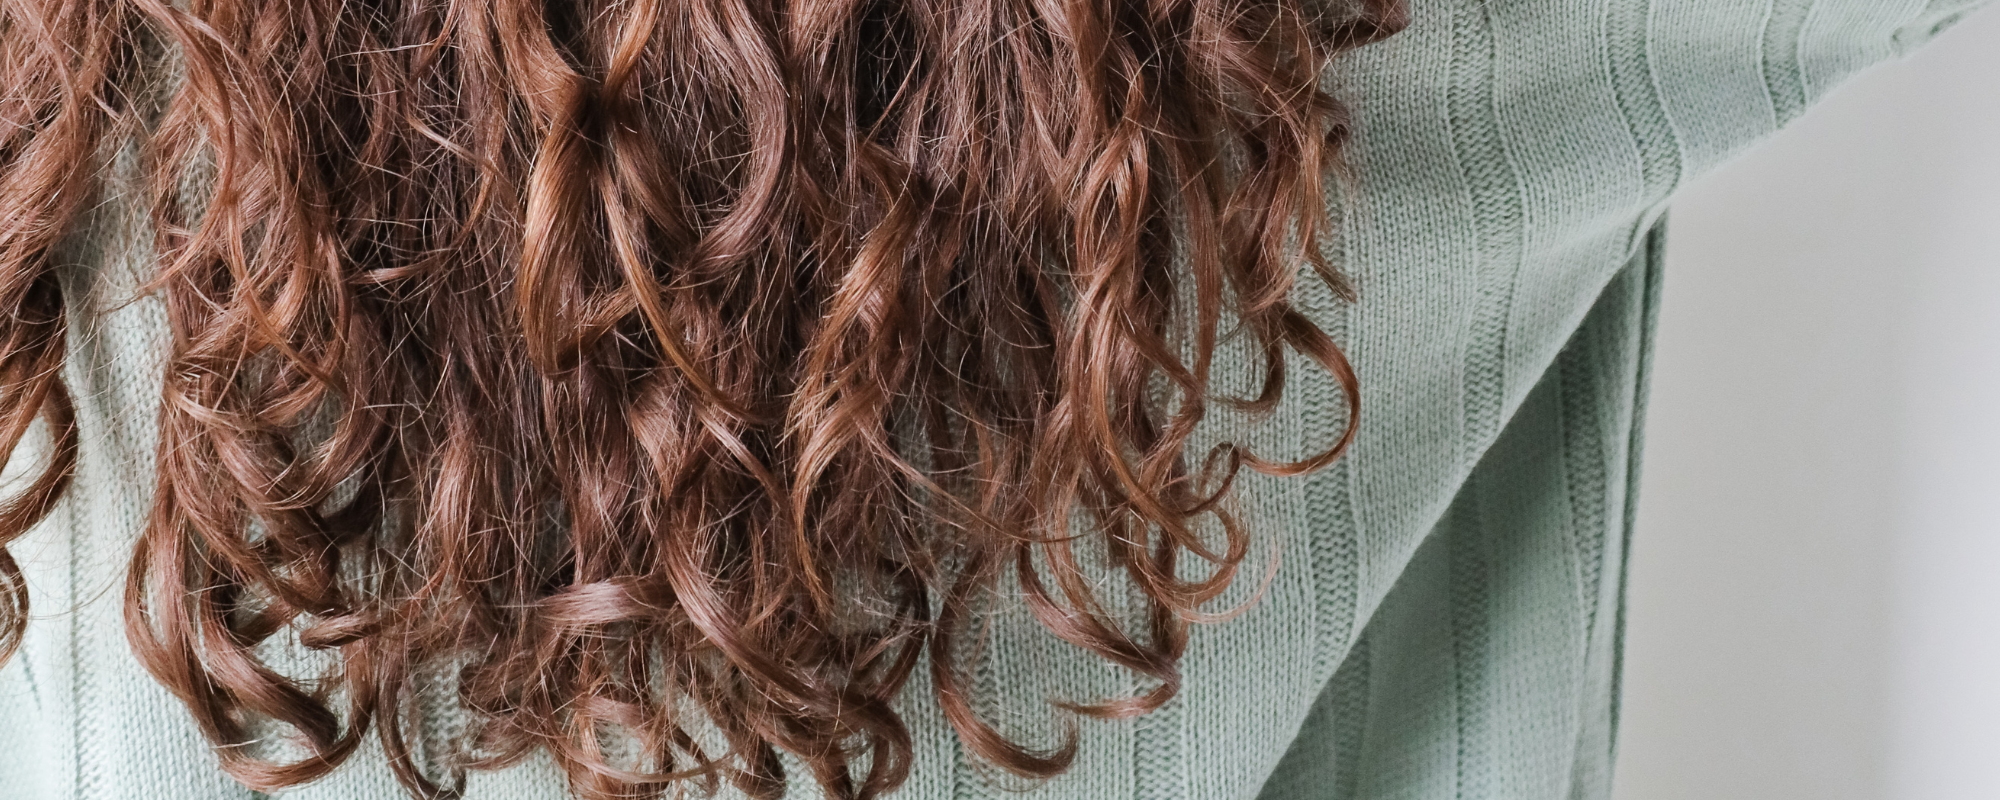 Upptäck naturlig skönhet med vår Hair Soap Pink Clay & Chamomile – en hantverkartvål som förenar rosa lera och kamomill för en lyxig hårvårdsupplevelse. Njut av skonsam rening och återfuktning med detta konstverk av naturliga ingredienser. Ge ditt hår den omsorg det förtjänar och omfamna harmonin av kamomill varje gång du tvättar.